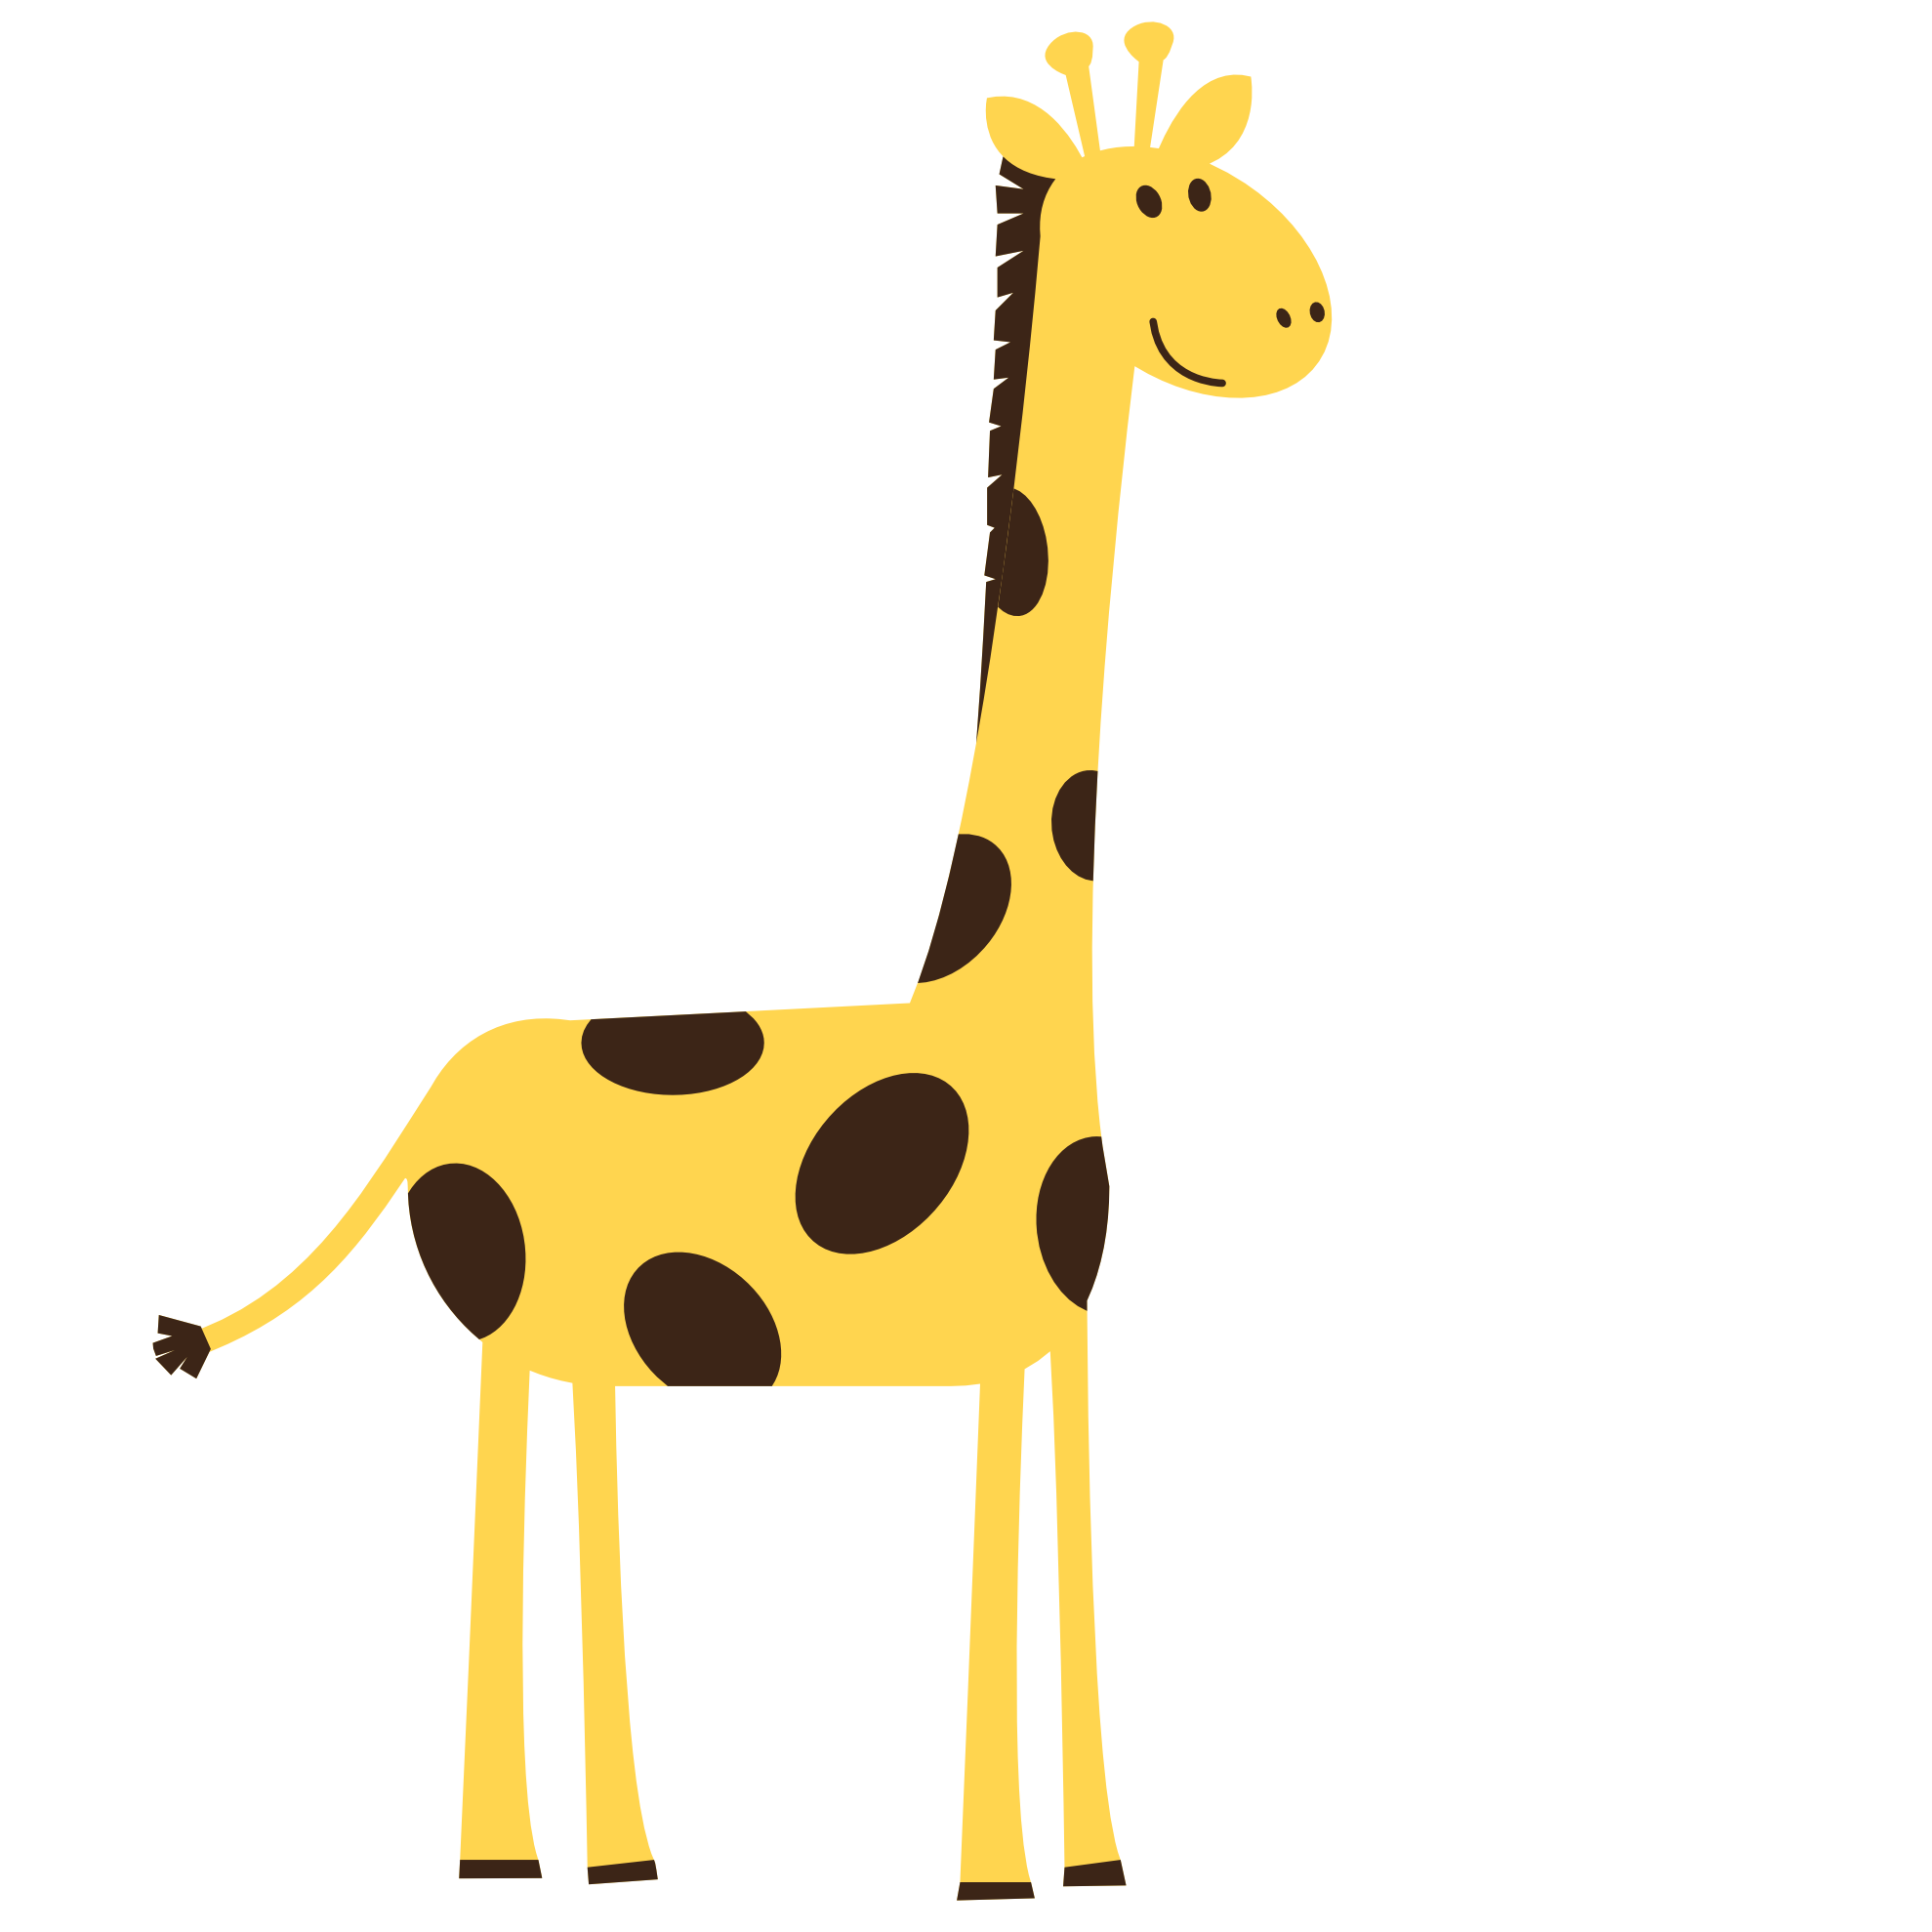 How To Draw A Giraffe Clip Art - ClipArt Best